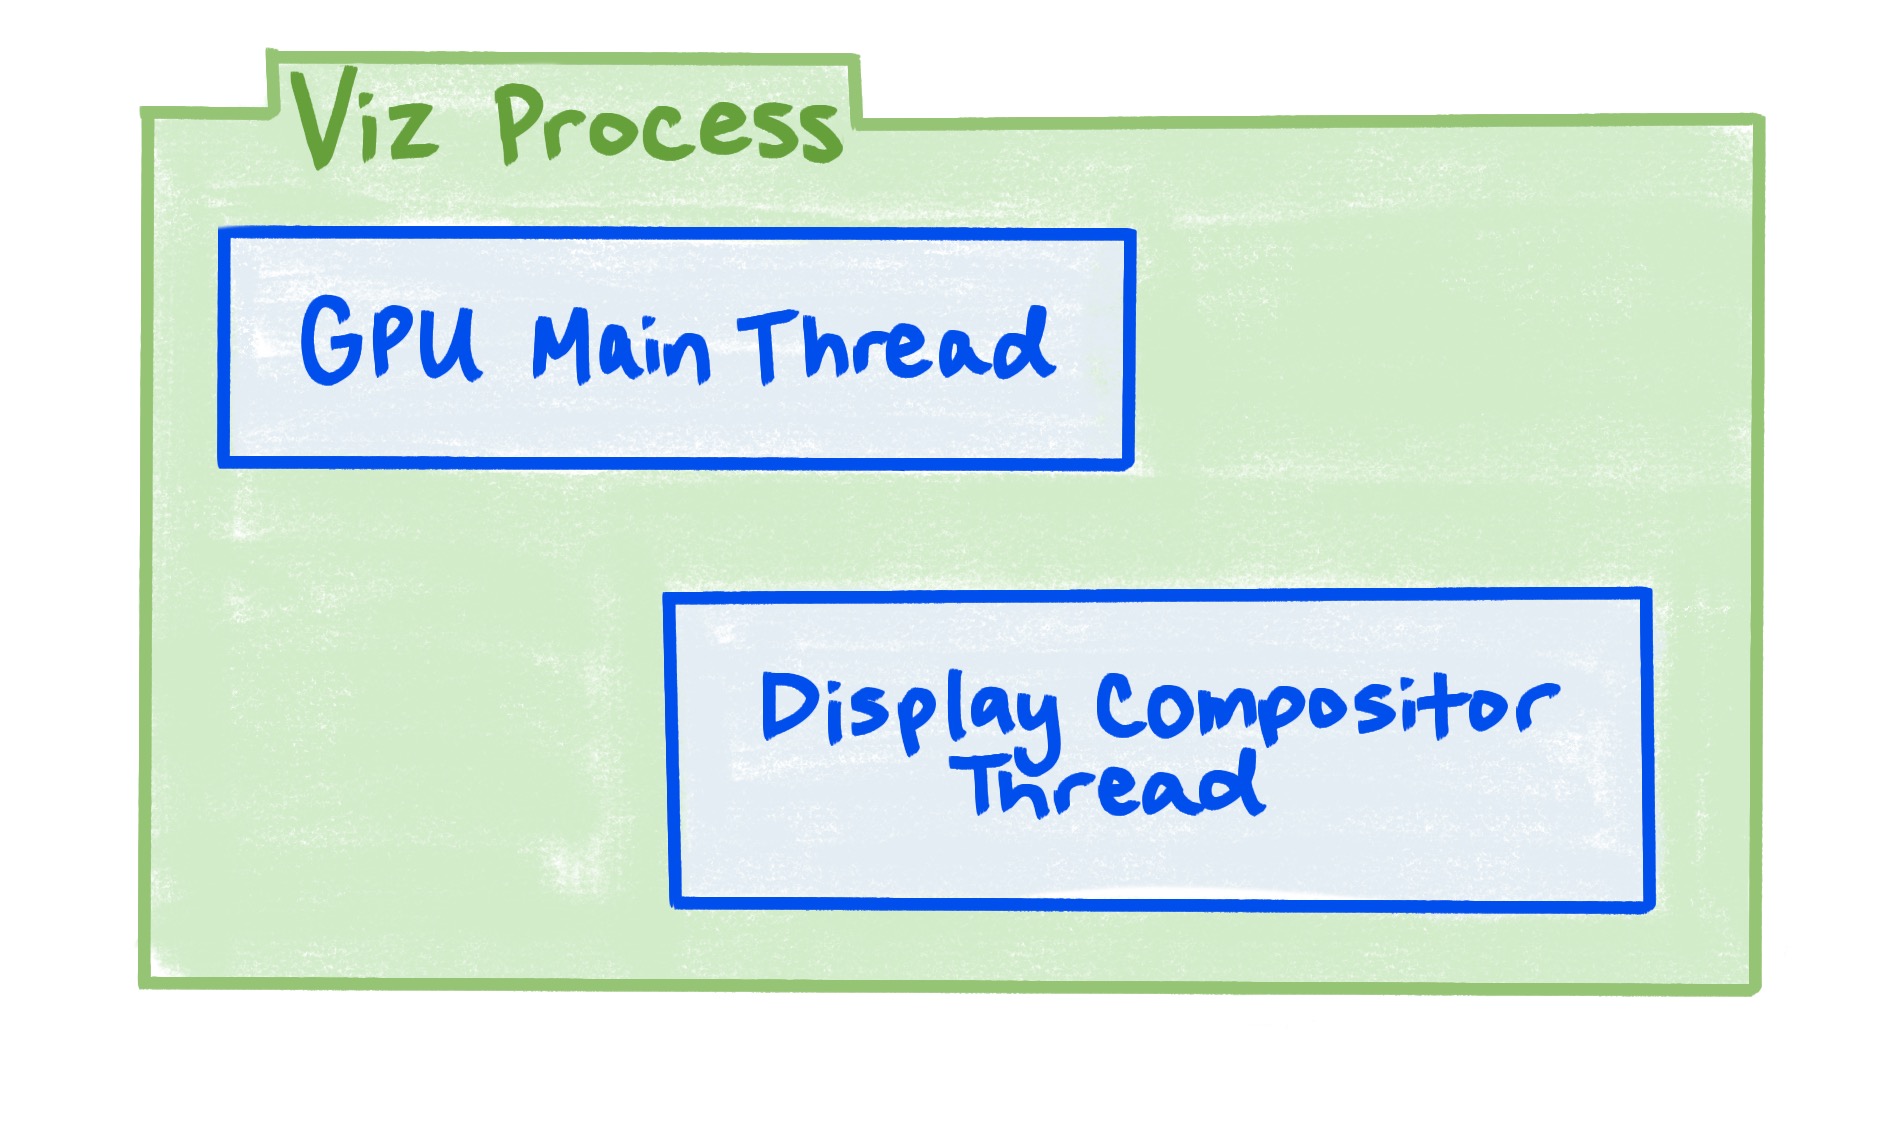 Un diagrama que muestra que el proceso de Viz incluye el subproceso principal de la GPU y el subproceso del compositor de pantalla.